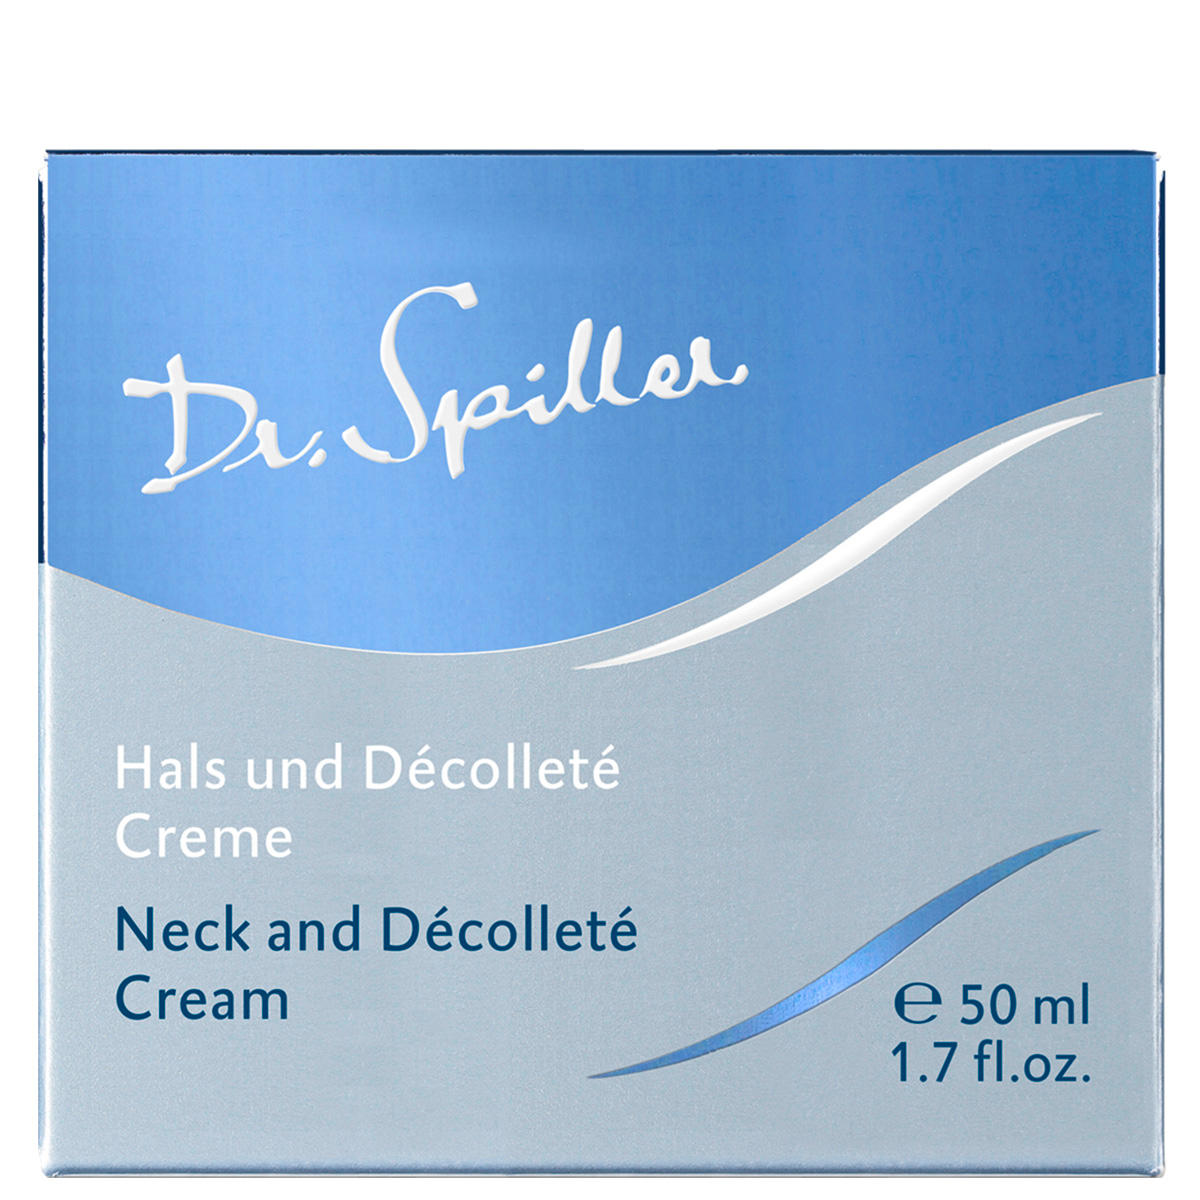 Dr. Spiller Hals und Décolleté Creme 50 ml - 3